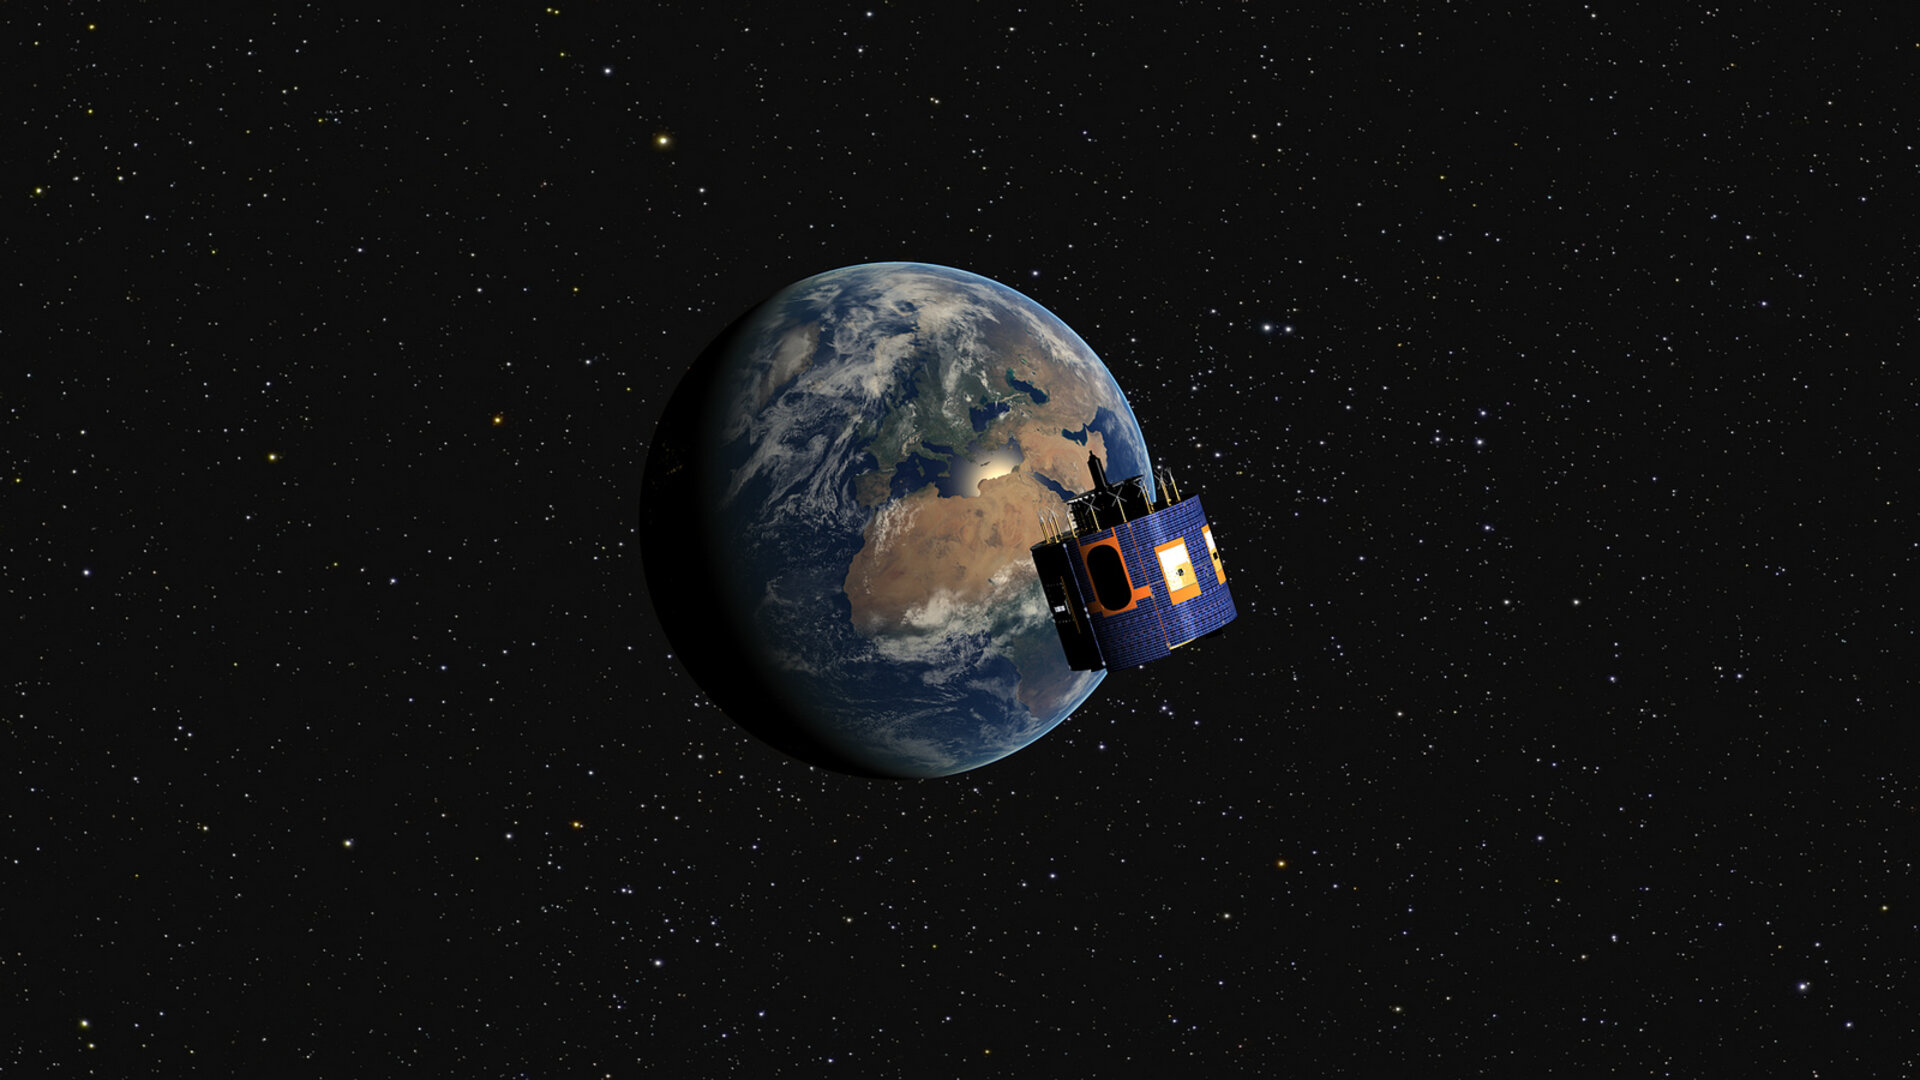 MSG-4 in orbit